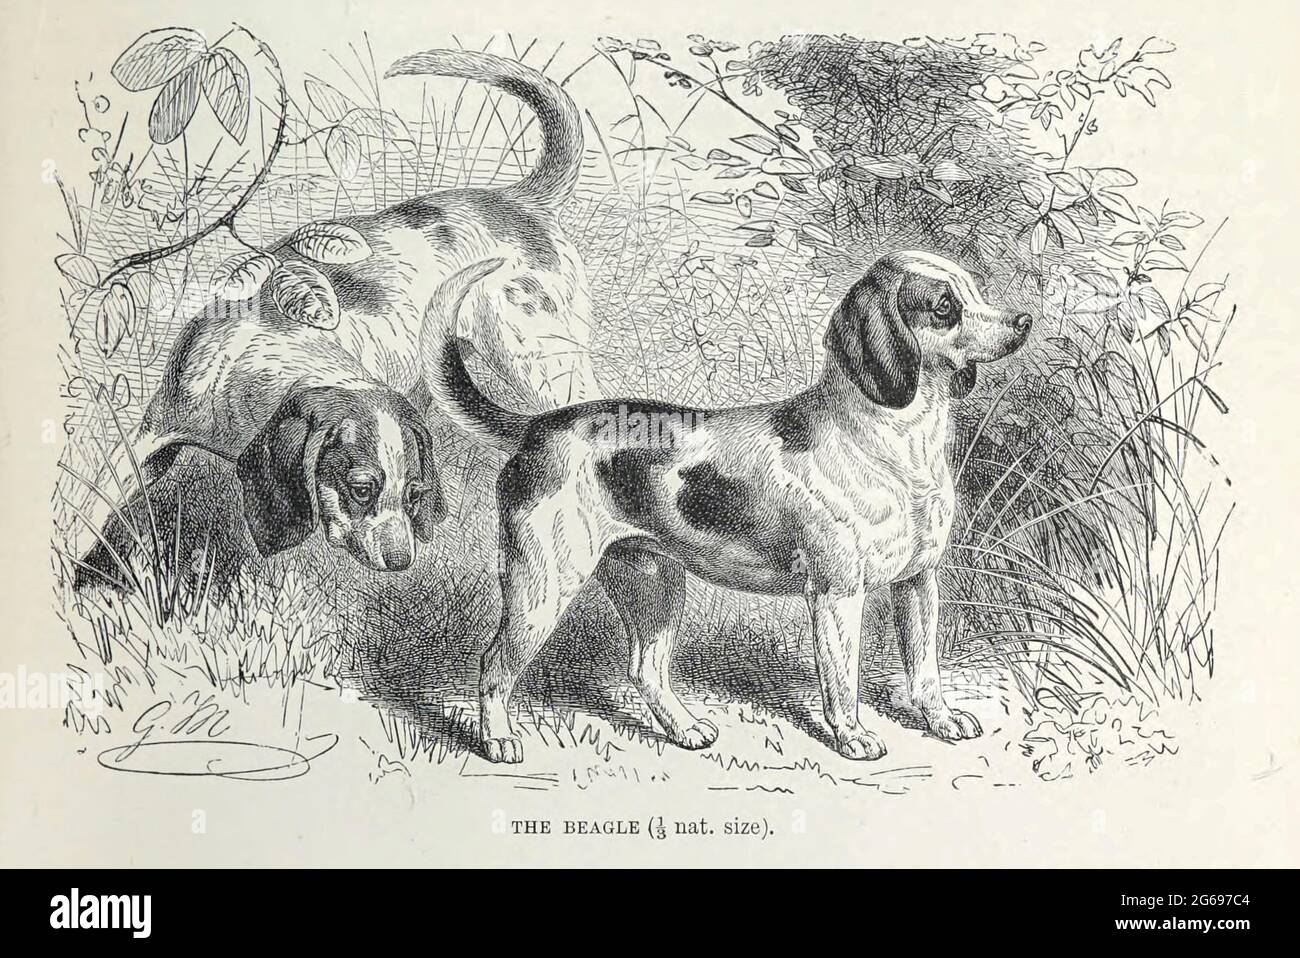 Le Beagle le beagle a été développé principalement pour la chasse au lièvre (beagling). Doté d'une grande sensation d'odorat et d'un instinct de suivi supérieur, le beagle est la race principale utilisée comme chien de détection pour les importations agricoles interdites et les denrées alimentaires en quarantaine dans le monde entier. Le beagle est intelligent. C'est un animal de compagnie populaire en raison de sa taille, bonne humeur, et un manque de problèmes de santé hérités. Extrait du livre « Royal Natural History » Volume 1 Section II édité par Richard Lydekker, publié à Londres par Frederick Warne & Co en 1893-1894 Banque D'Images